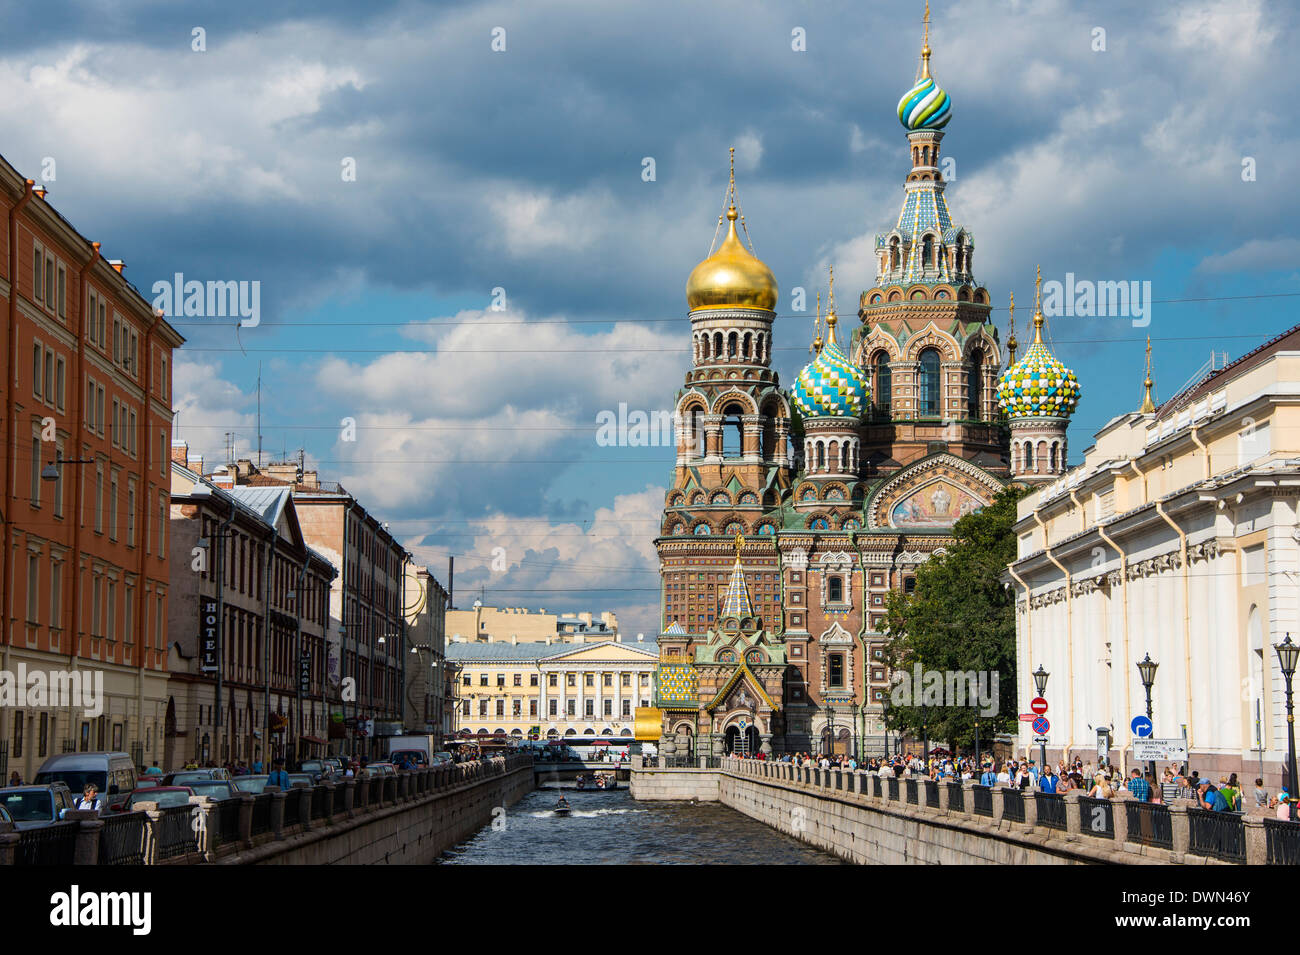 Eglise du Sauveur sur le Sang Versé, l'UNESCO World Heritage Site, Saint-Pétersbourg, Russie, Europe Banque D'Images